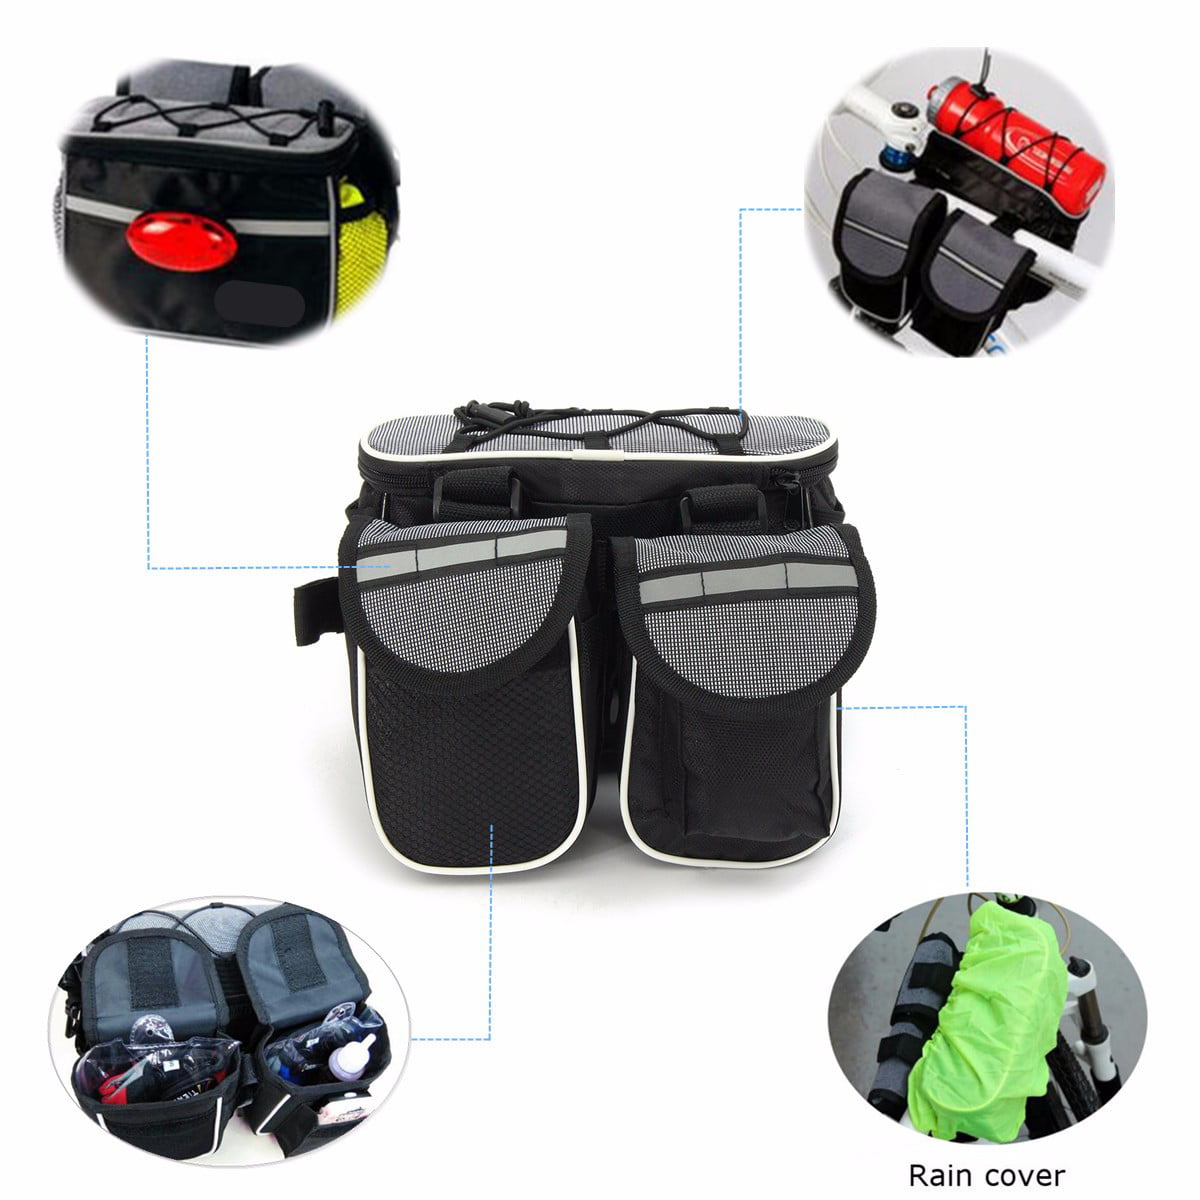 White BPA-free Replaces Saddle Bag / Seat Bag / Cycling Bag / Storage Keg Running Cycling Hiking Multi-functional SmrT Hydration Cargo Water Bottle